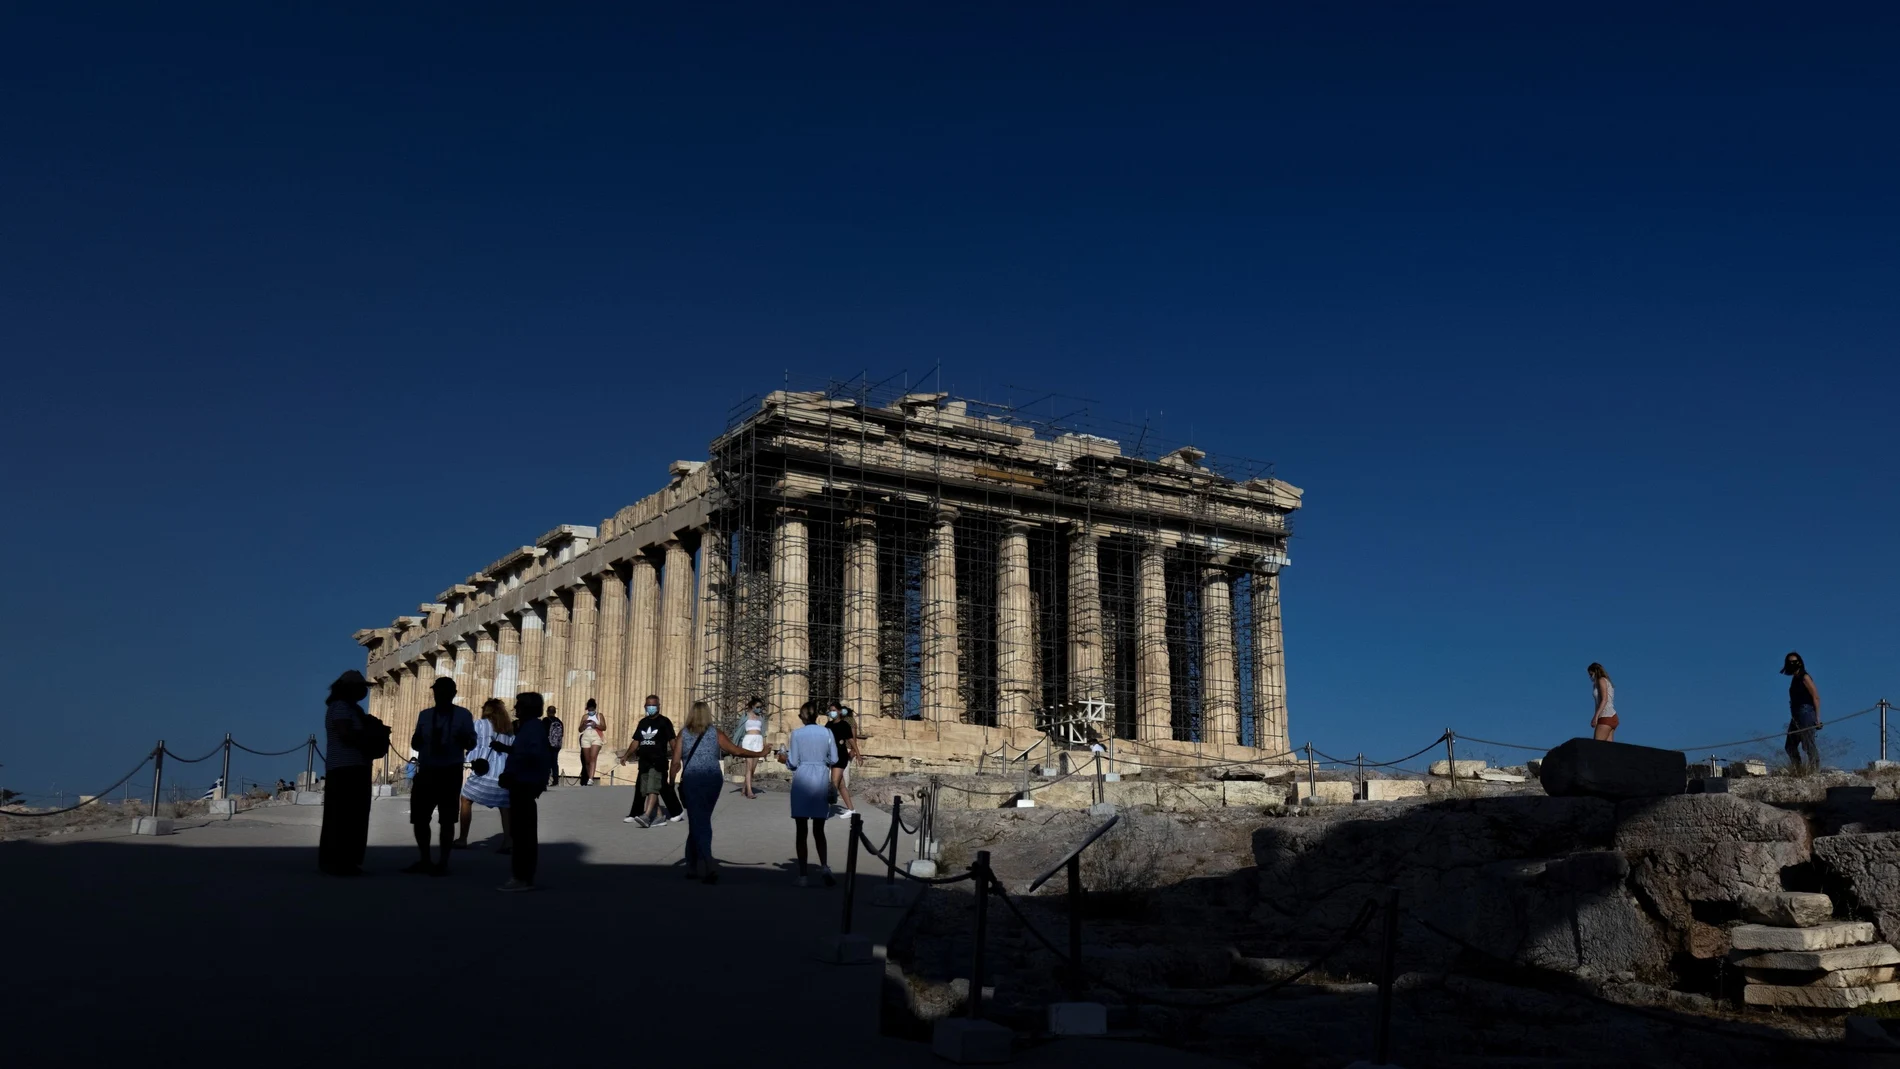 Partenón, joya arquitectónica de Atenas